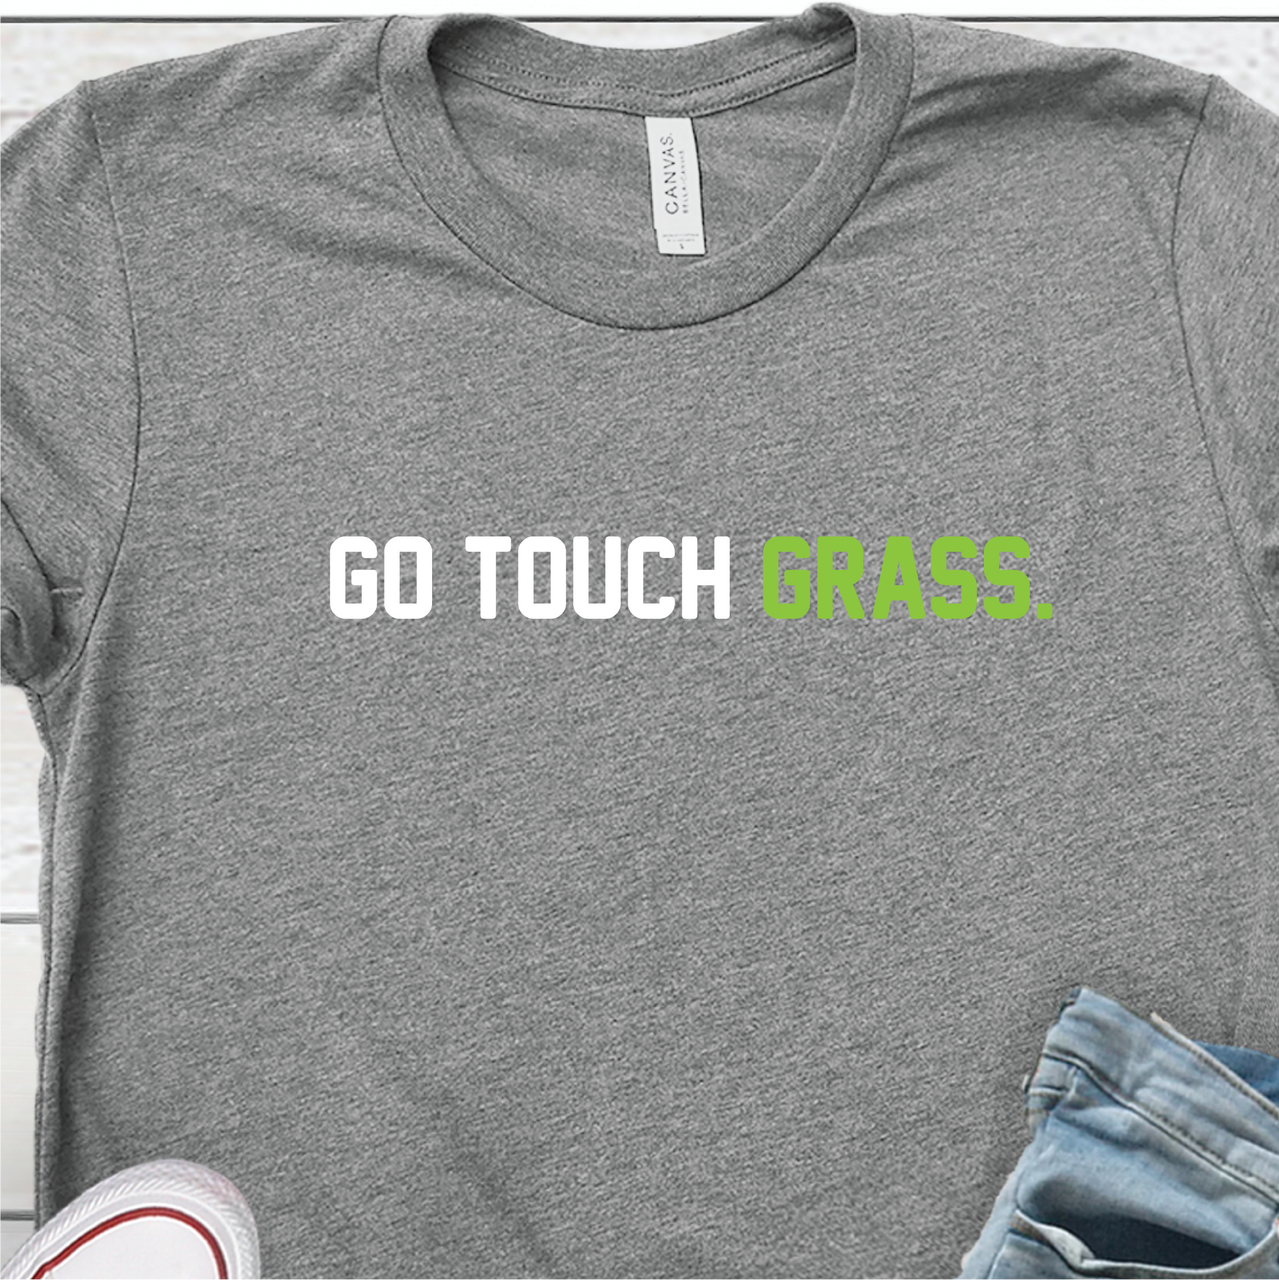 "Go Touch Grass" T-shirt